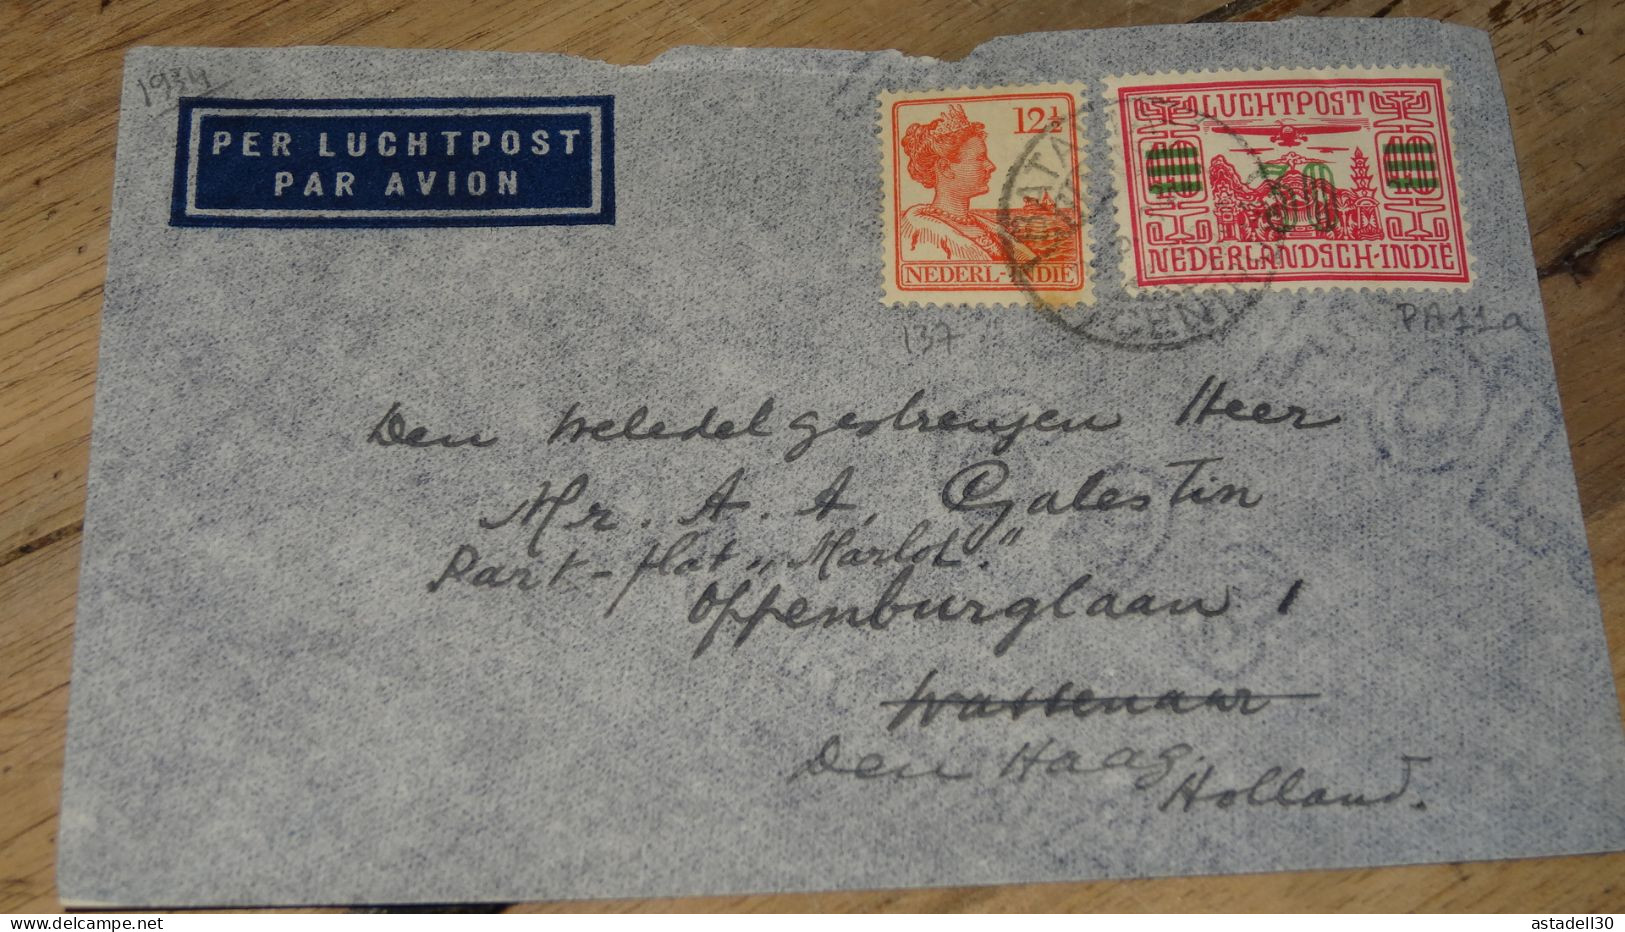 NEDERLANDISCH INDIE, Cover Luchtpost To Holland - 1934 ......... ..... 240424 ....... CL5-6 - Niederländisch-Indien